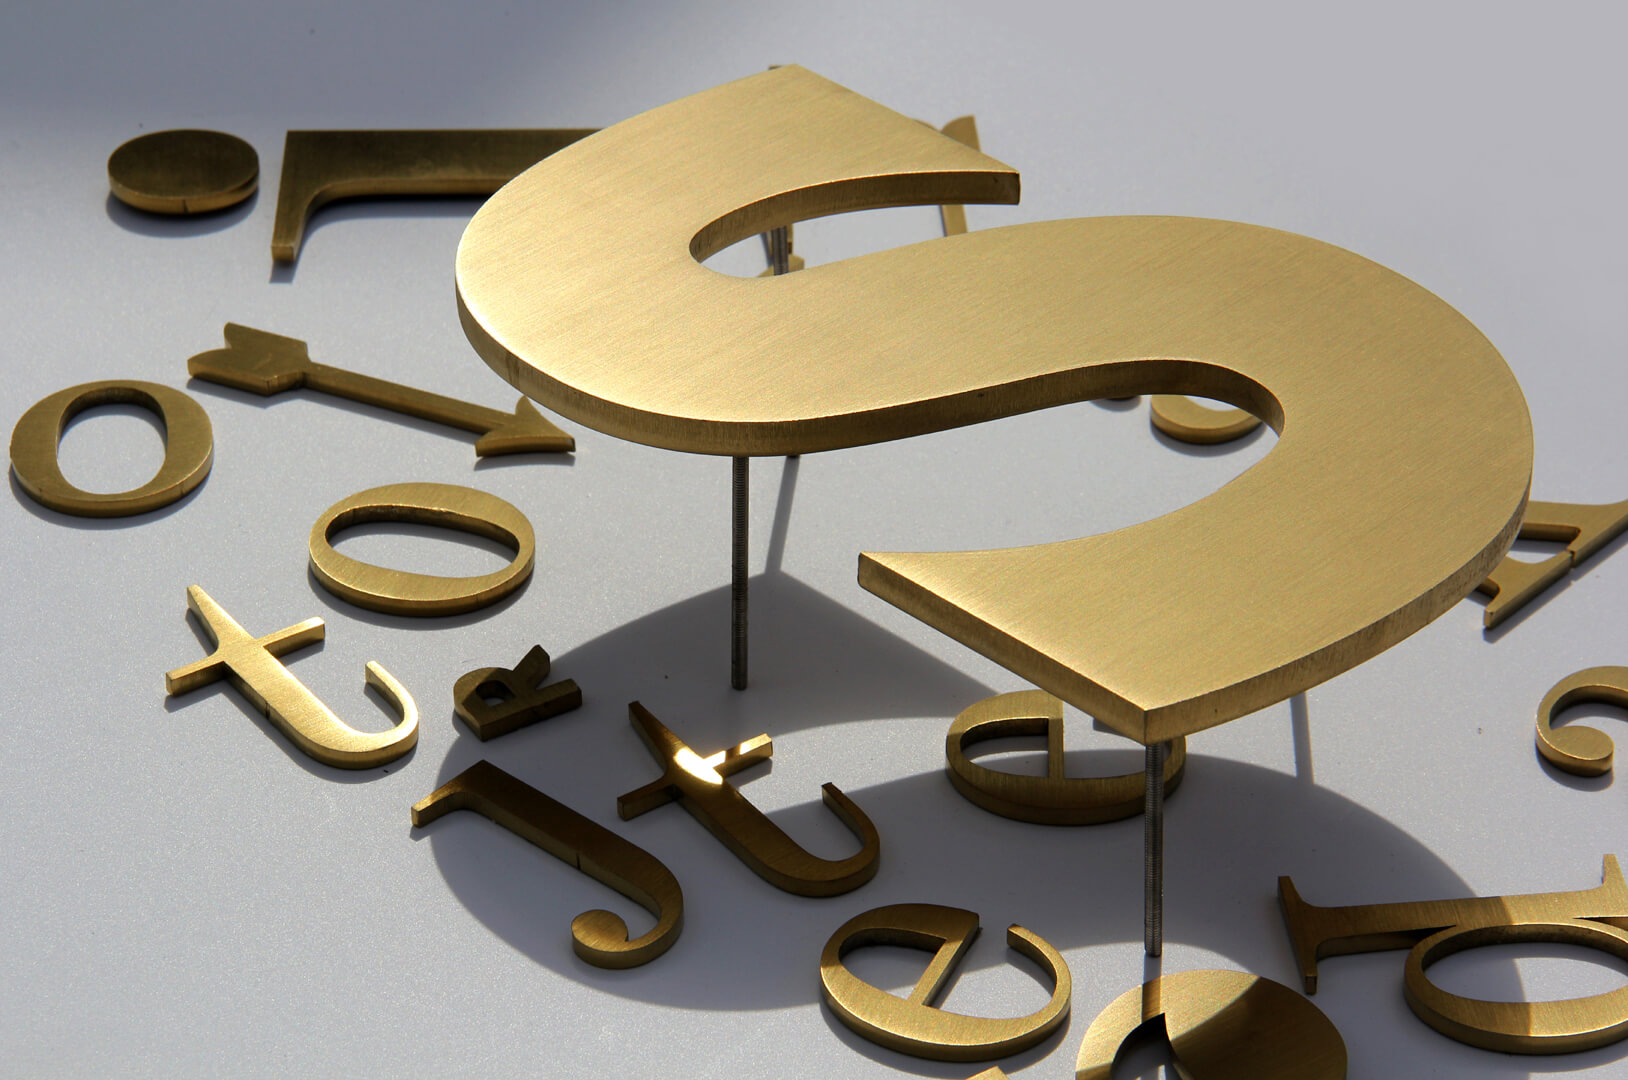 Lettres d'or - Lettres métalliques en or, style industriel.